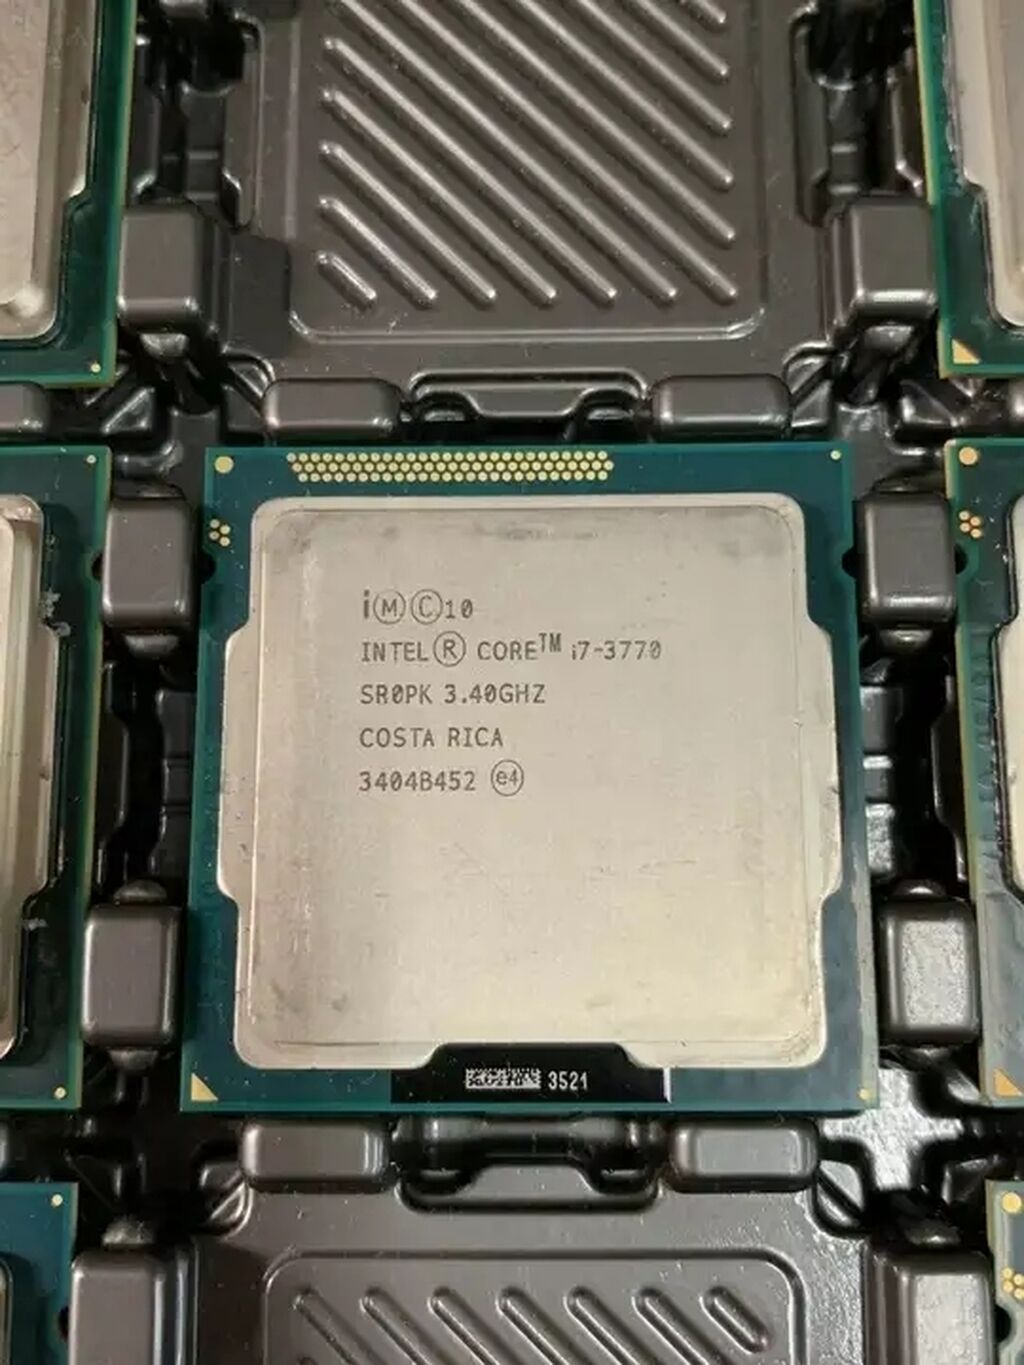 Интел i7 купить. Intel Core i7-3770. Процессор: Intel Core i7-3770 CPU. Intel i7 3770 3.4GHZ. Intel Core i7-3770 OEM.